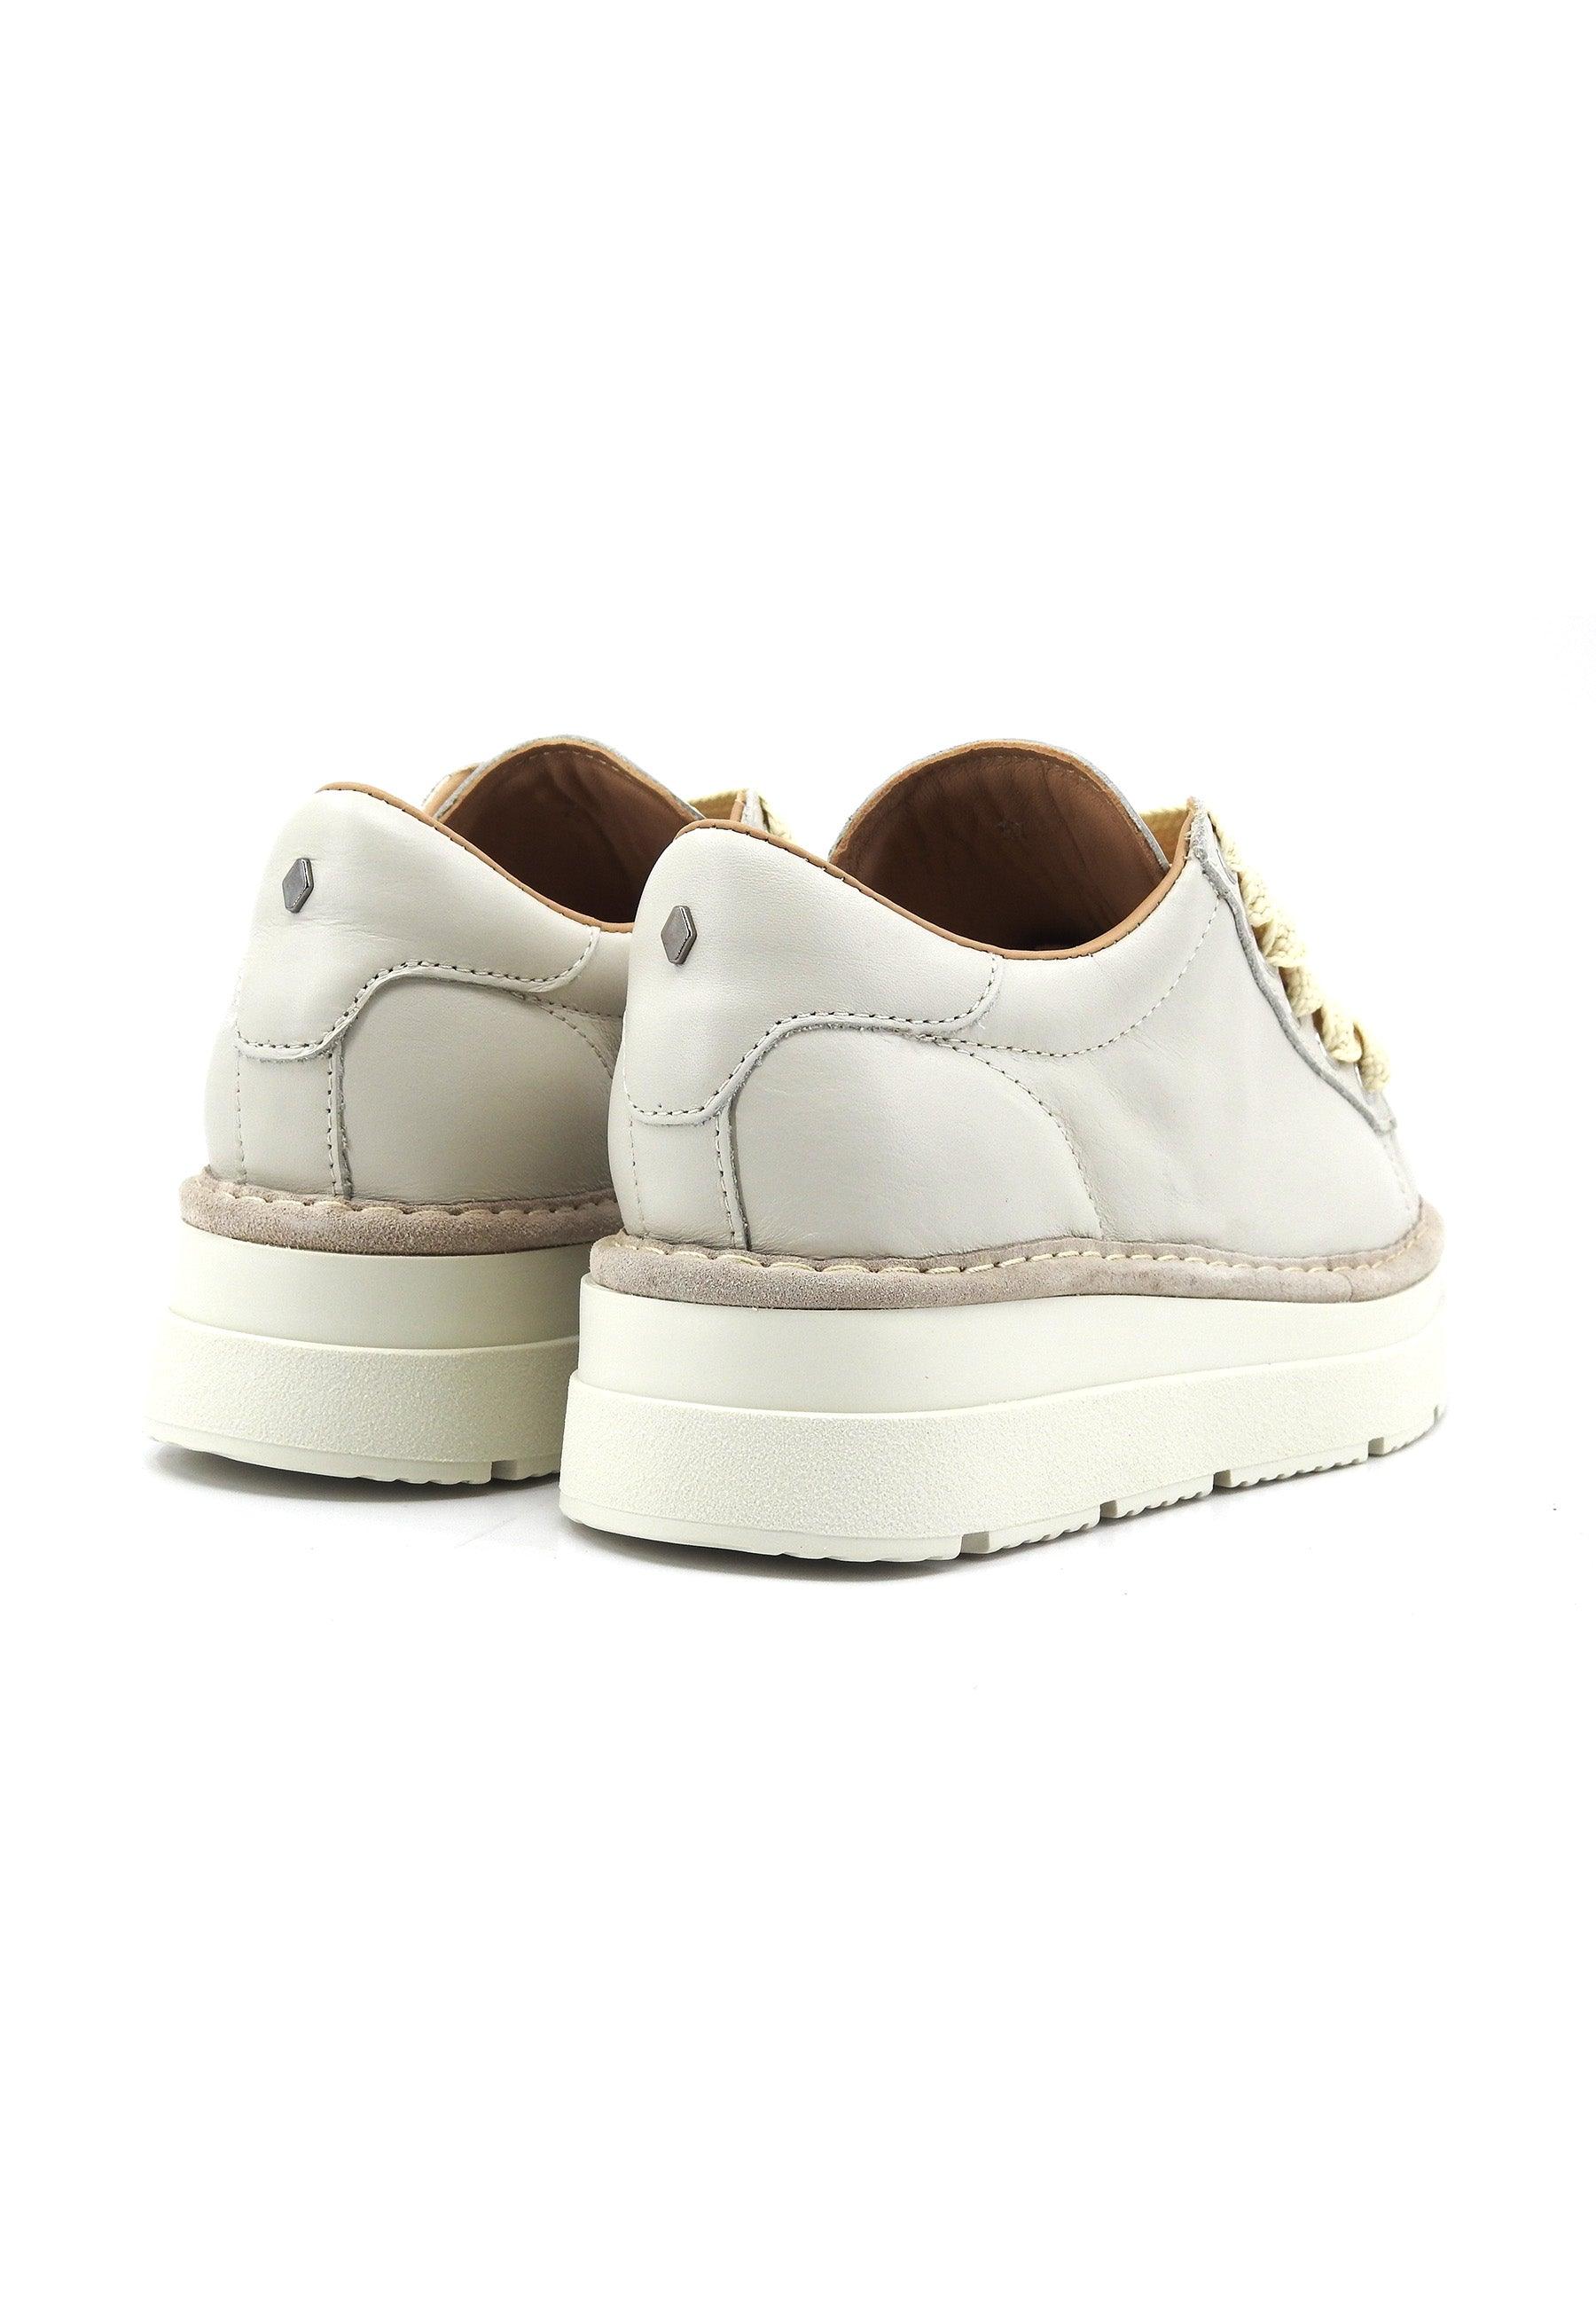 PANCHIC Sneaker Donna Ice Grigio P89W007-0058A004 - Sandrini Calzature e Abbigliamento